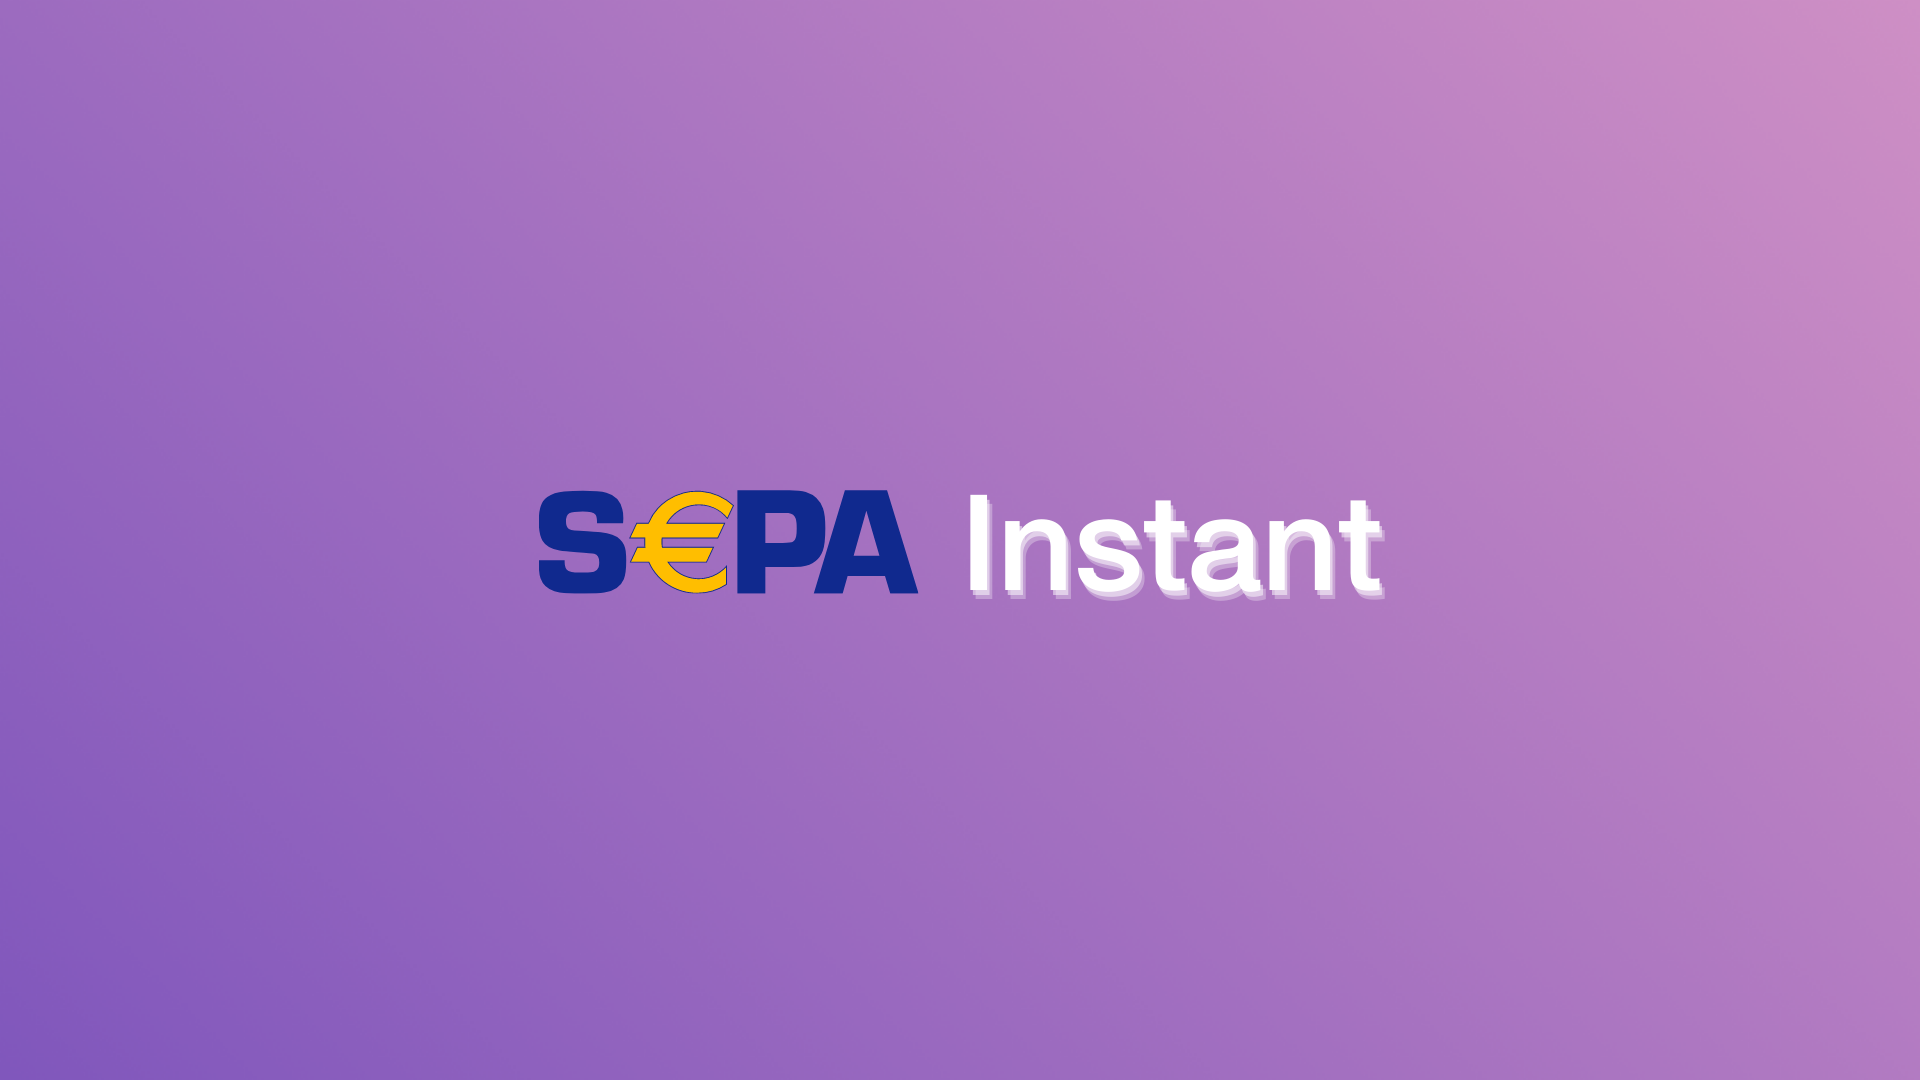 SEPA-Logo mit angehängtem Schriftzug "Instant"